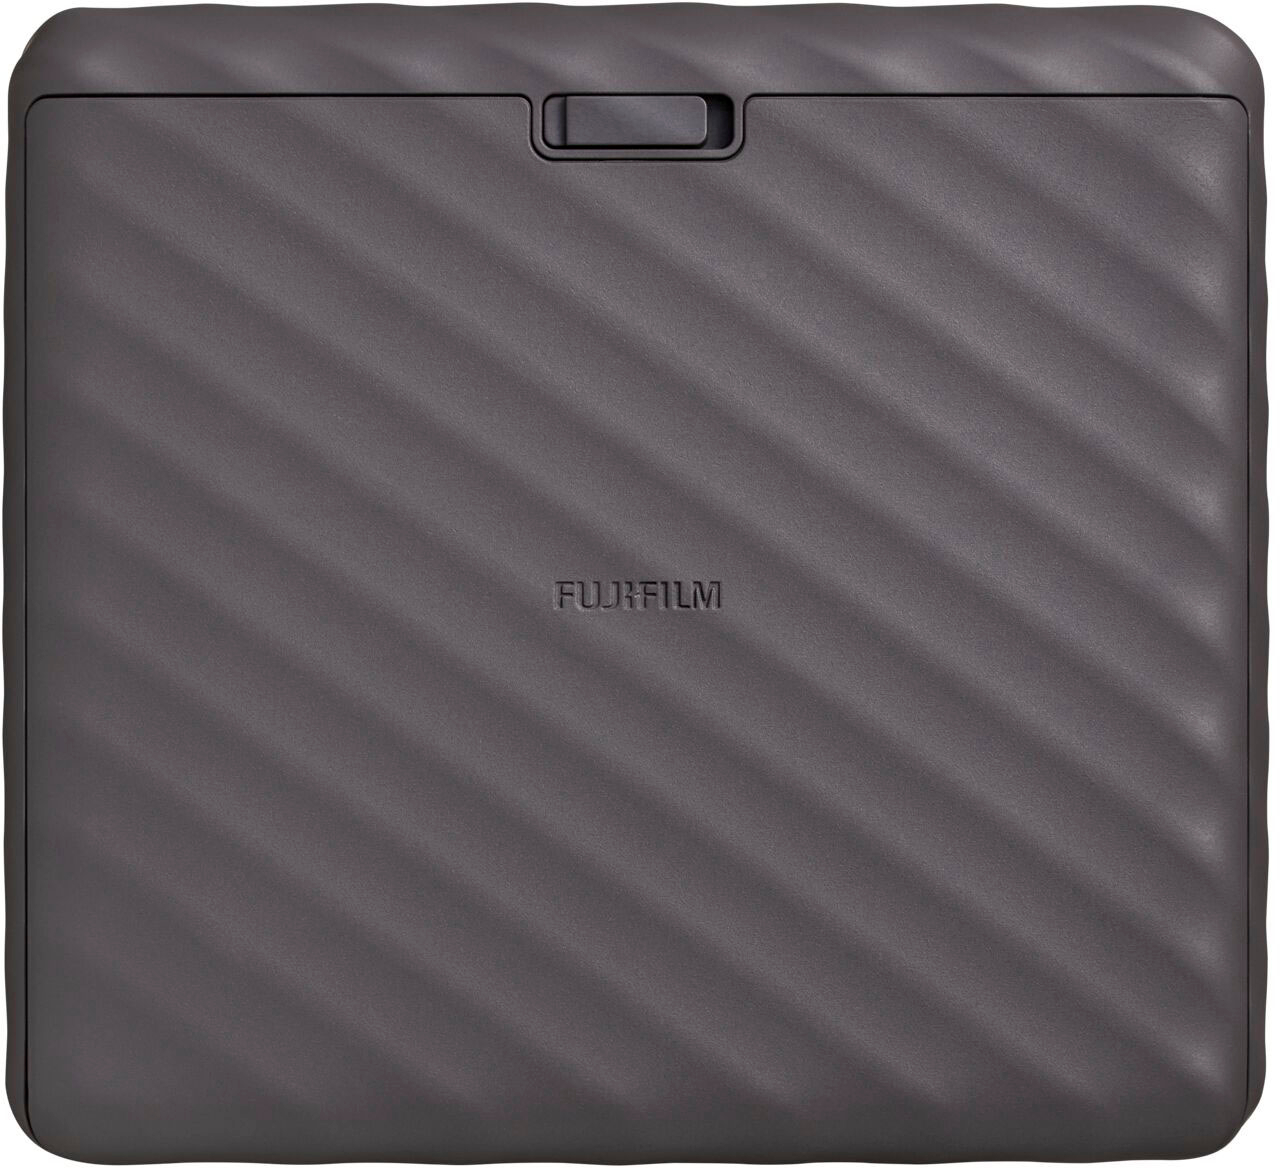 Fujifilm Instax Link Wide Wireless Photo Printer Mocha Gray 